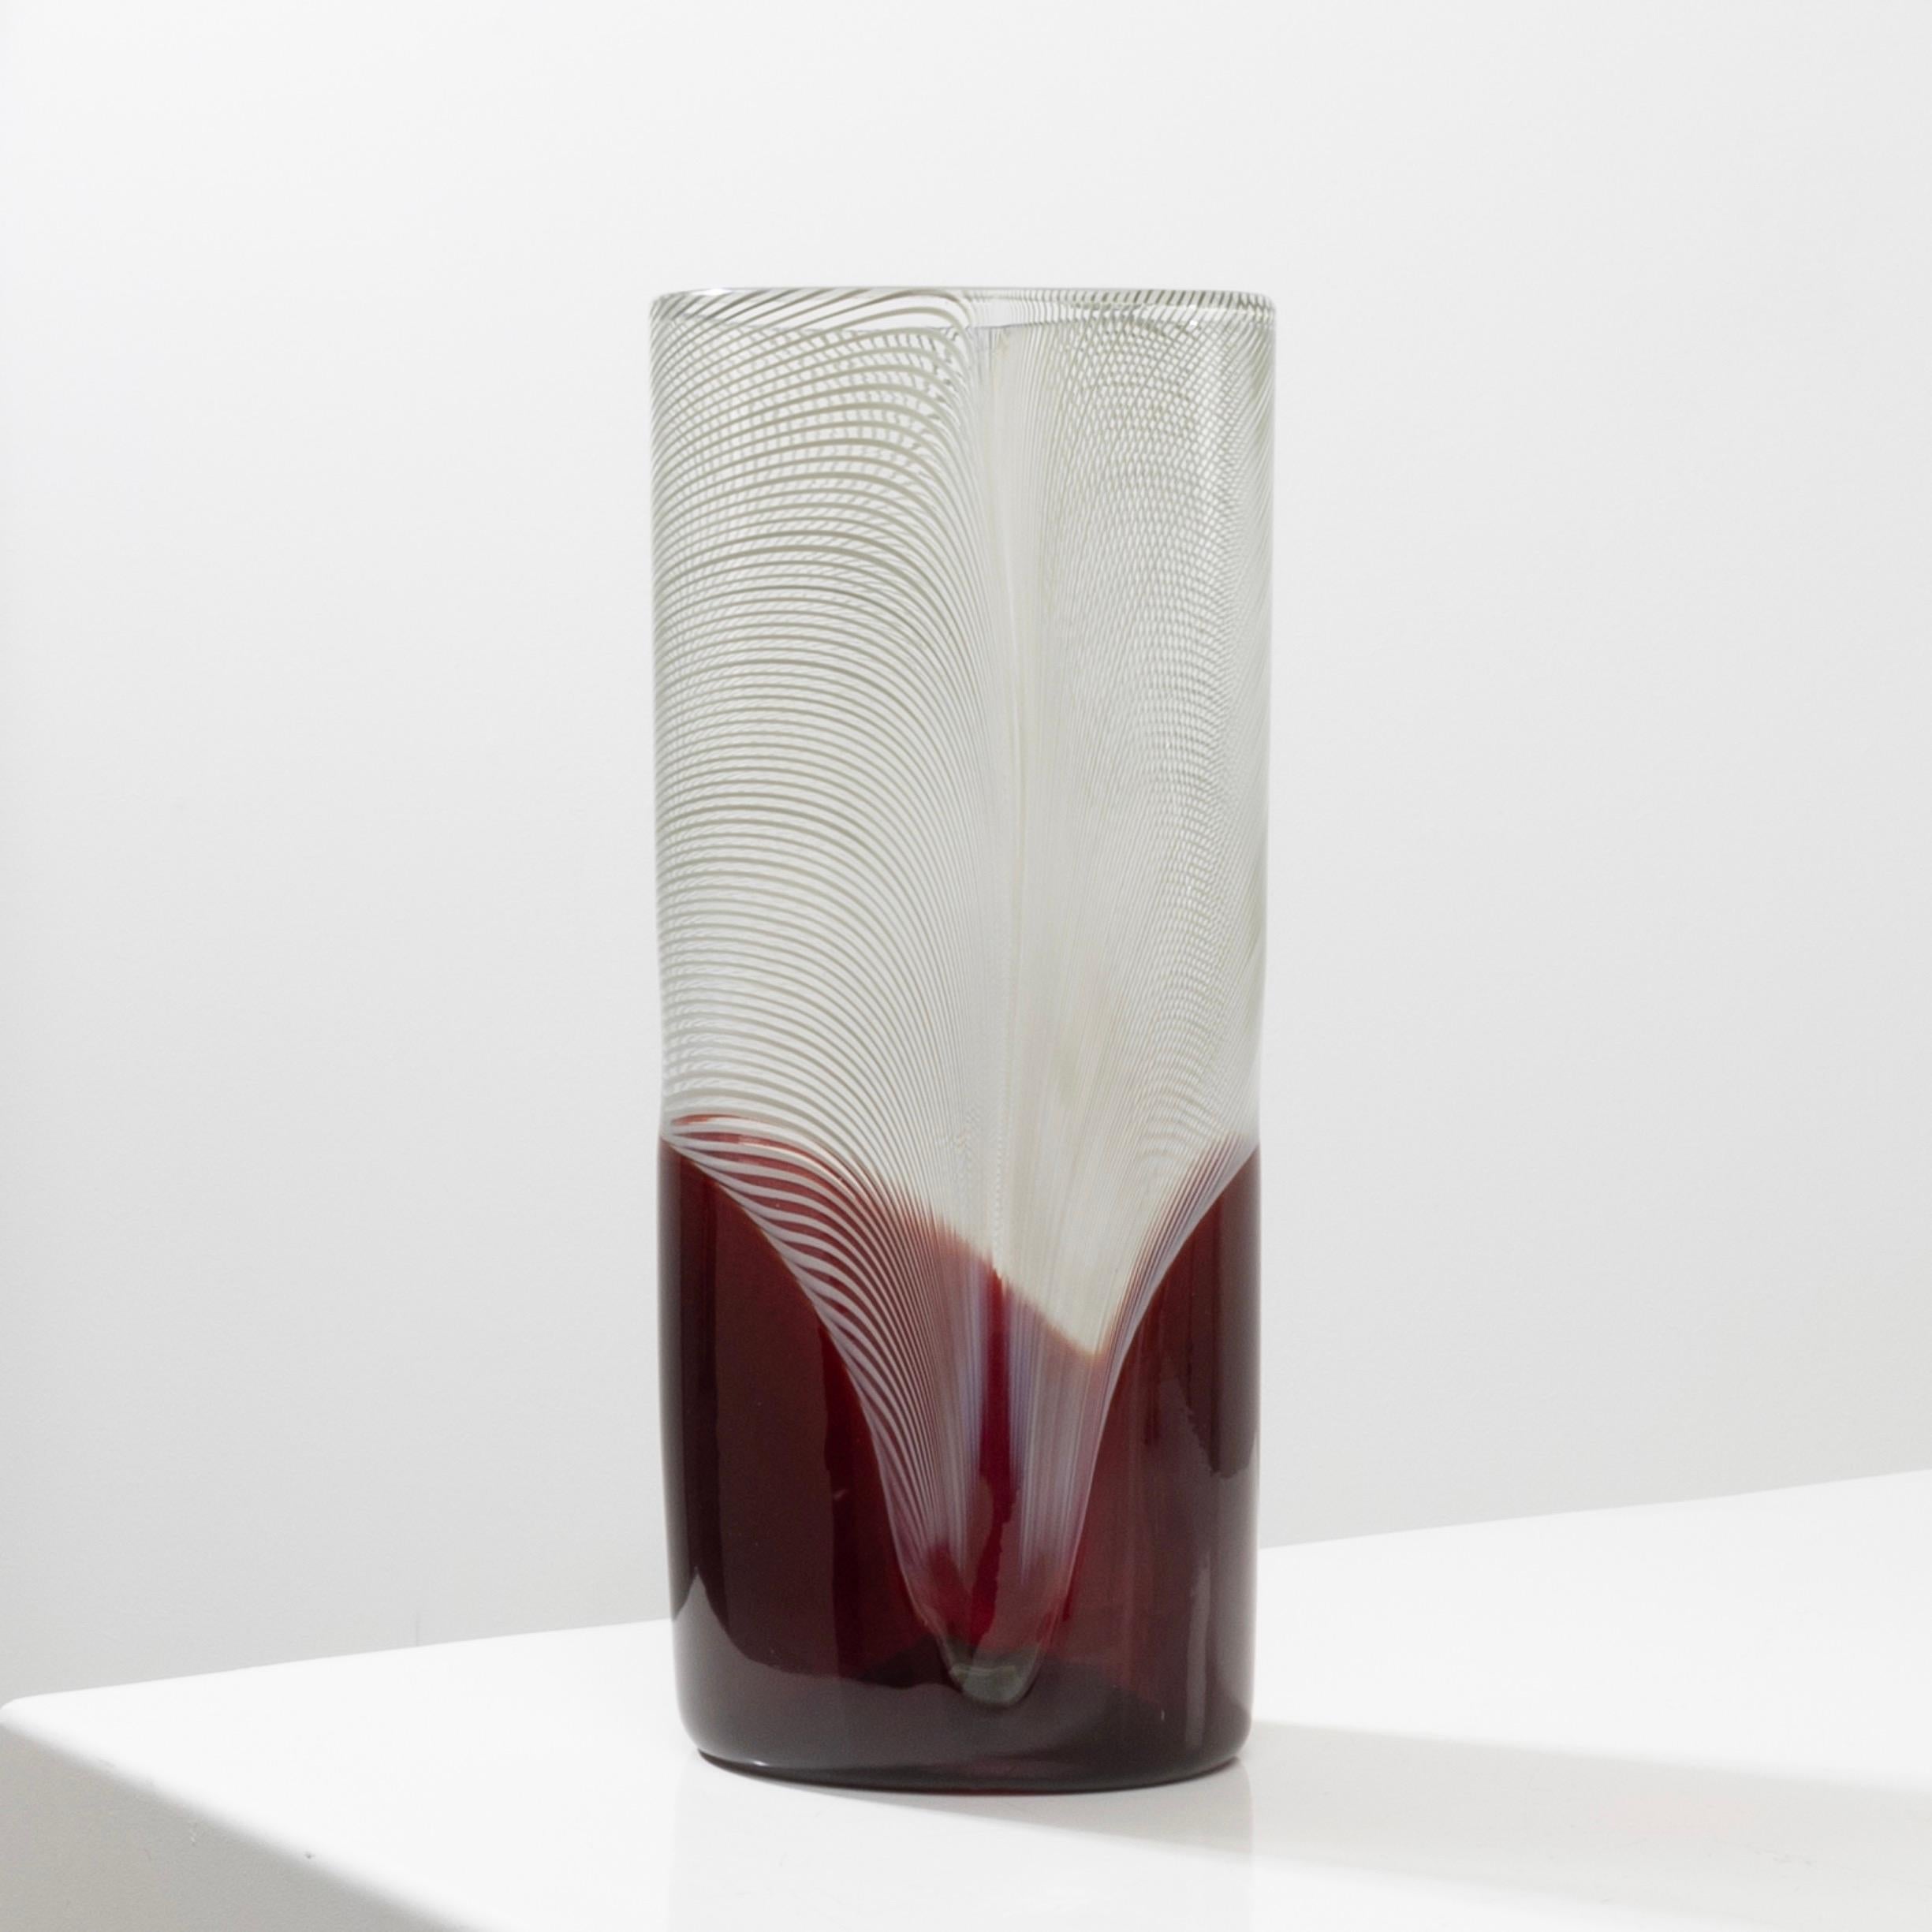 Pavoni von Tapio Wirkkala - Vase aus mundgeblasenem Murano-Glas
Pavoni von Tapio Wirkkala, Vase aus mundgeblasenem Murano-Glas.
Vase mit ovalem Querschnitt.
Dekor in Filigrana über rotem Glas.
Eine Vase aus der neuesten Serie, die der Künstler für